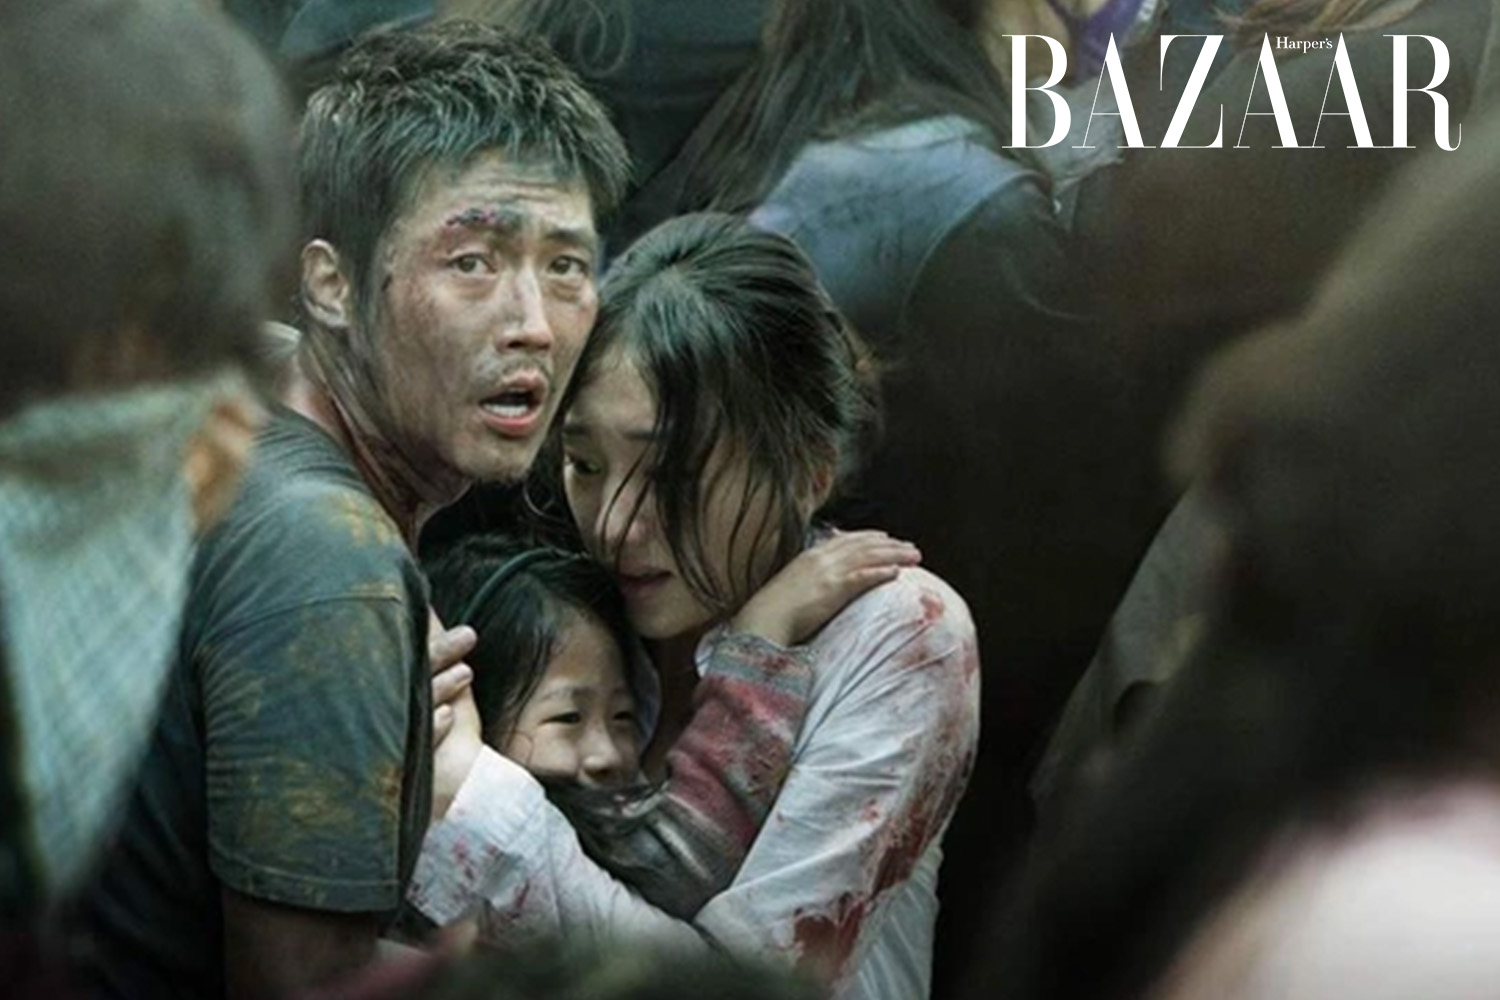 Harpers Bazaar phim han quoc chu de tham hoa 02 - Top 20 bộ phim điện ảnh Hàn Quốc đặc sắc nhất thập niên 2000